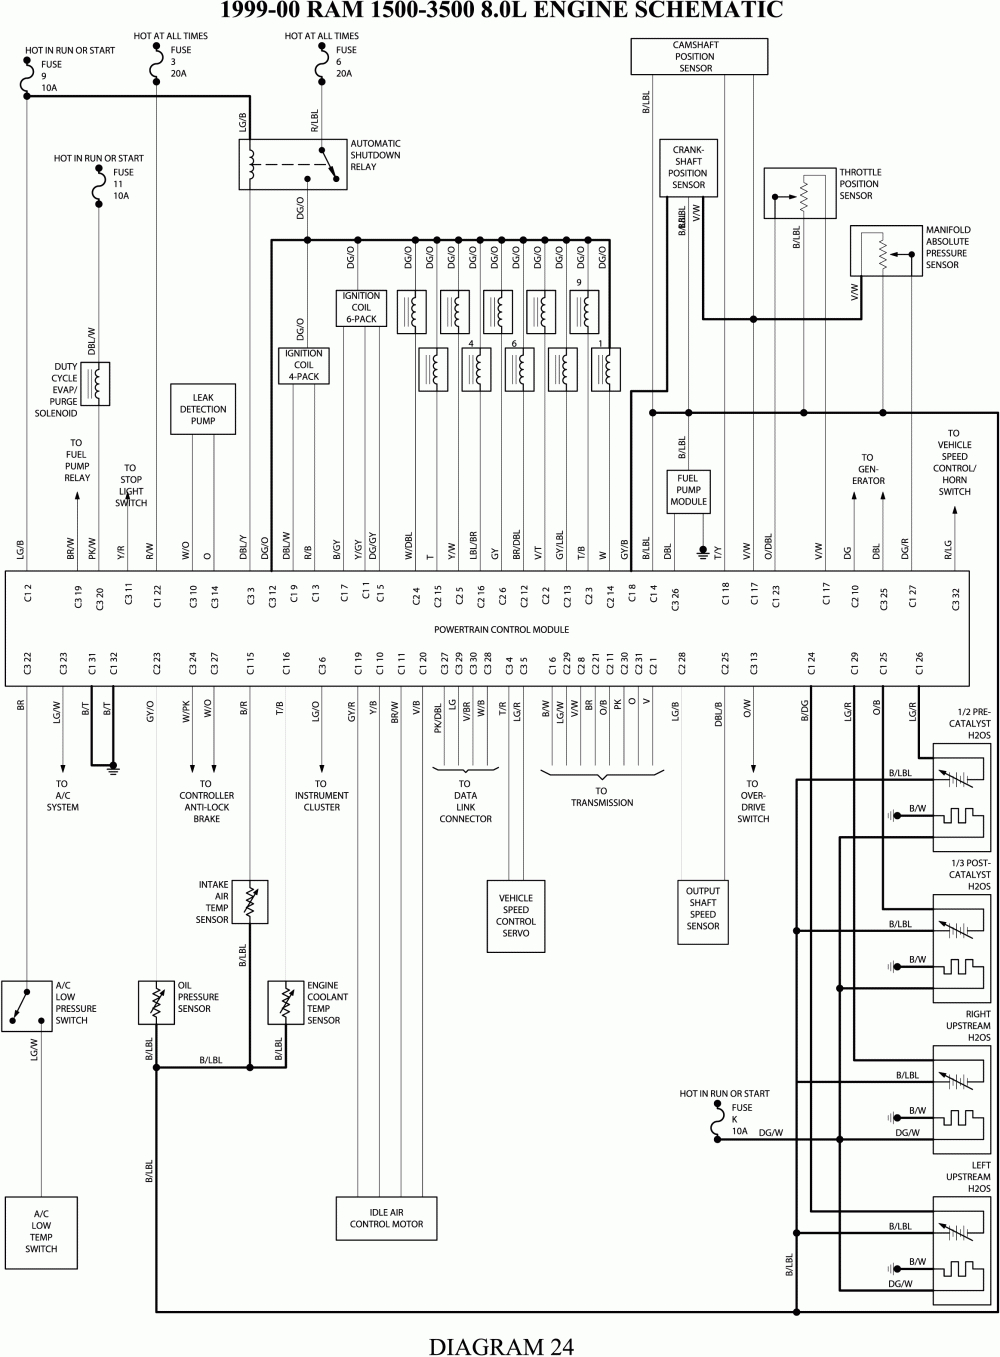 Free 2002 Dodge Ram 1500 Wiring Diagram | Wiring Diagram - Dodge Ram 1500 Wiring Diagram Free